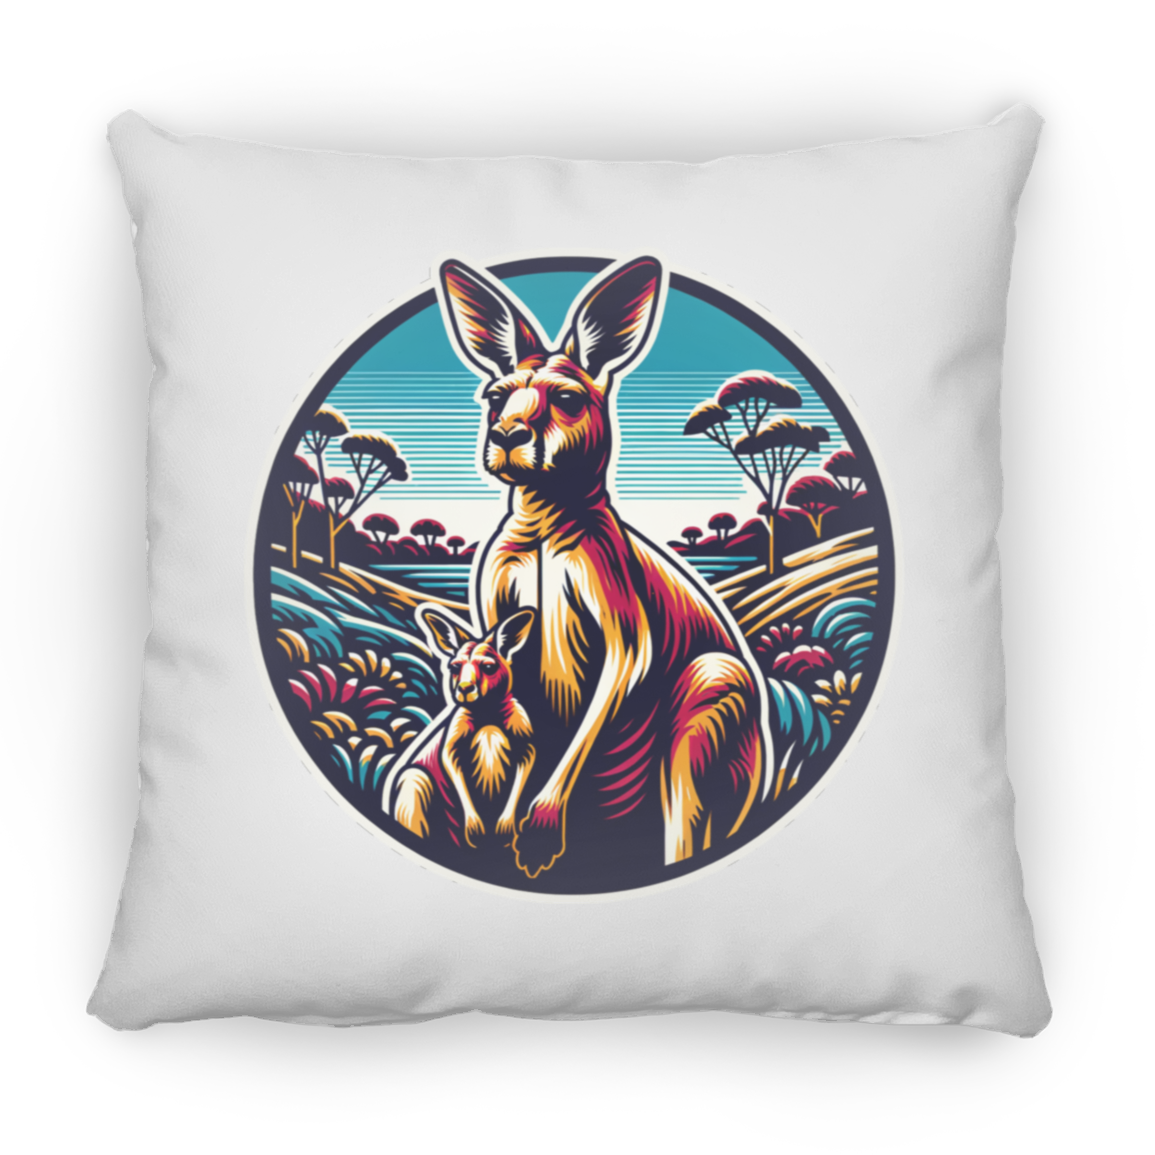 Kangaroo and Joey Graphic - Pillows